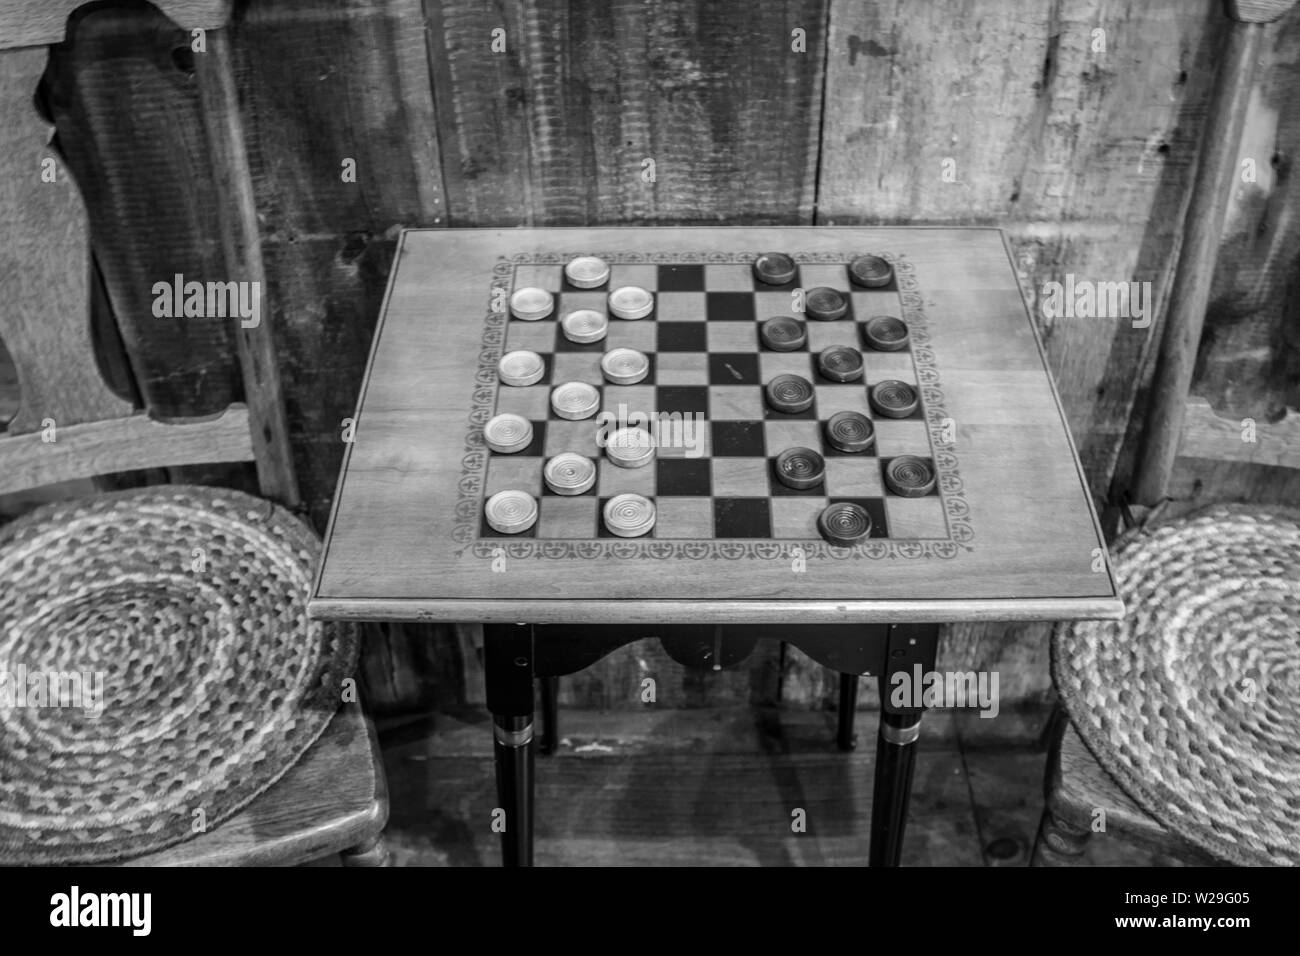 Gioco Di Dama. Tradizionale tavolo a scacchiera in legno di stile vintage con sgabelli in un negozio rurale di campagna. Foto Stock